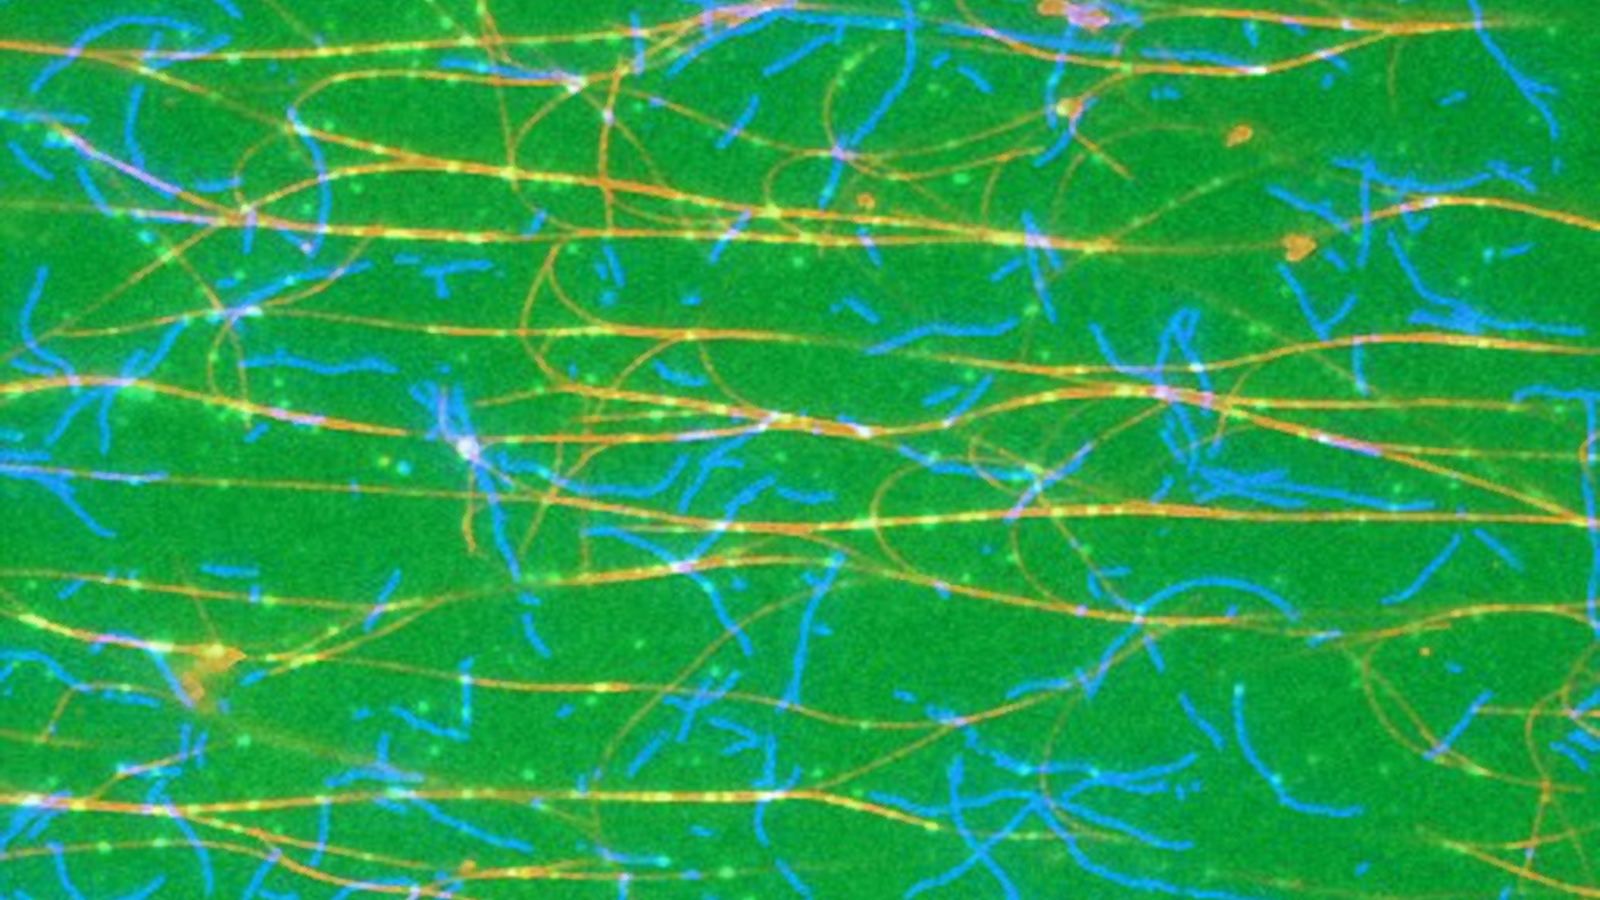 Mikroskopbild des Zytoskeletts einer Zelle. Aktin-Filamente sind blau und Mikrotubuli sind rot dargestellt. Die Transporter sind als hellgrüne Punkte zu erkennen. 